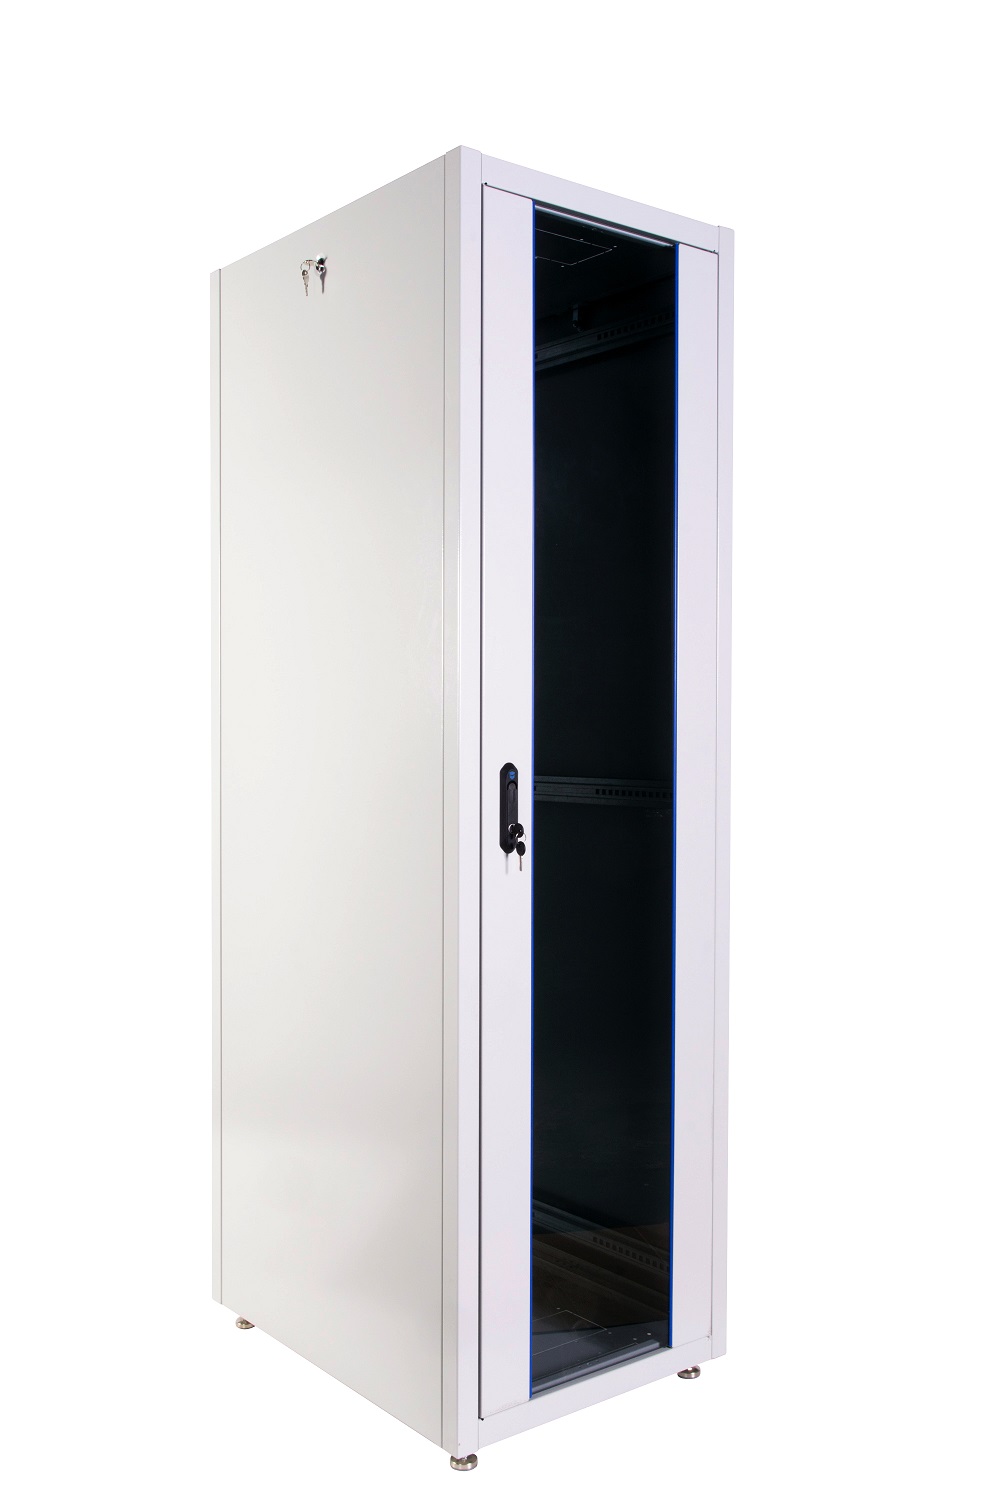  Купить Шкаф телекоммуникационный напольный ЭКОНОМ 48U (600 × 800) дверь стекло, дверь металл